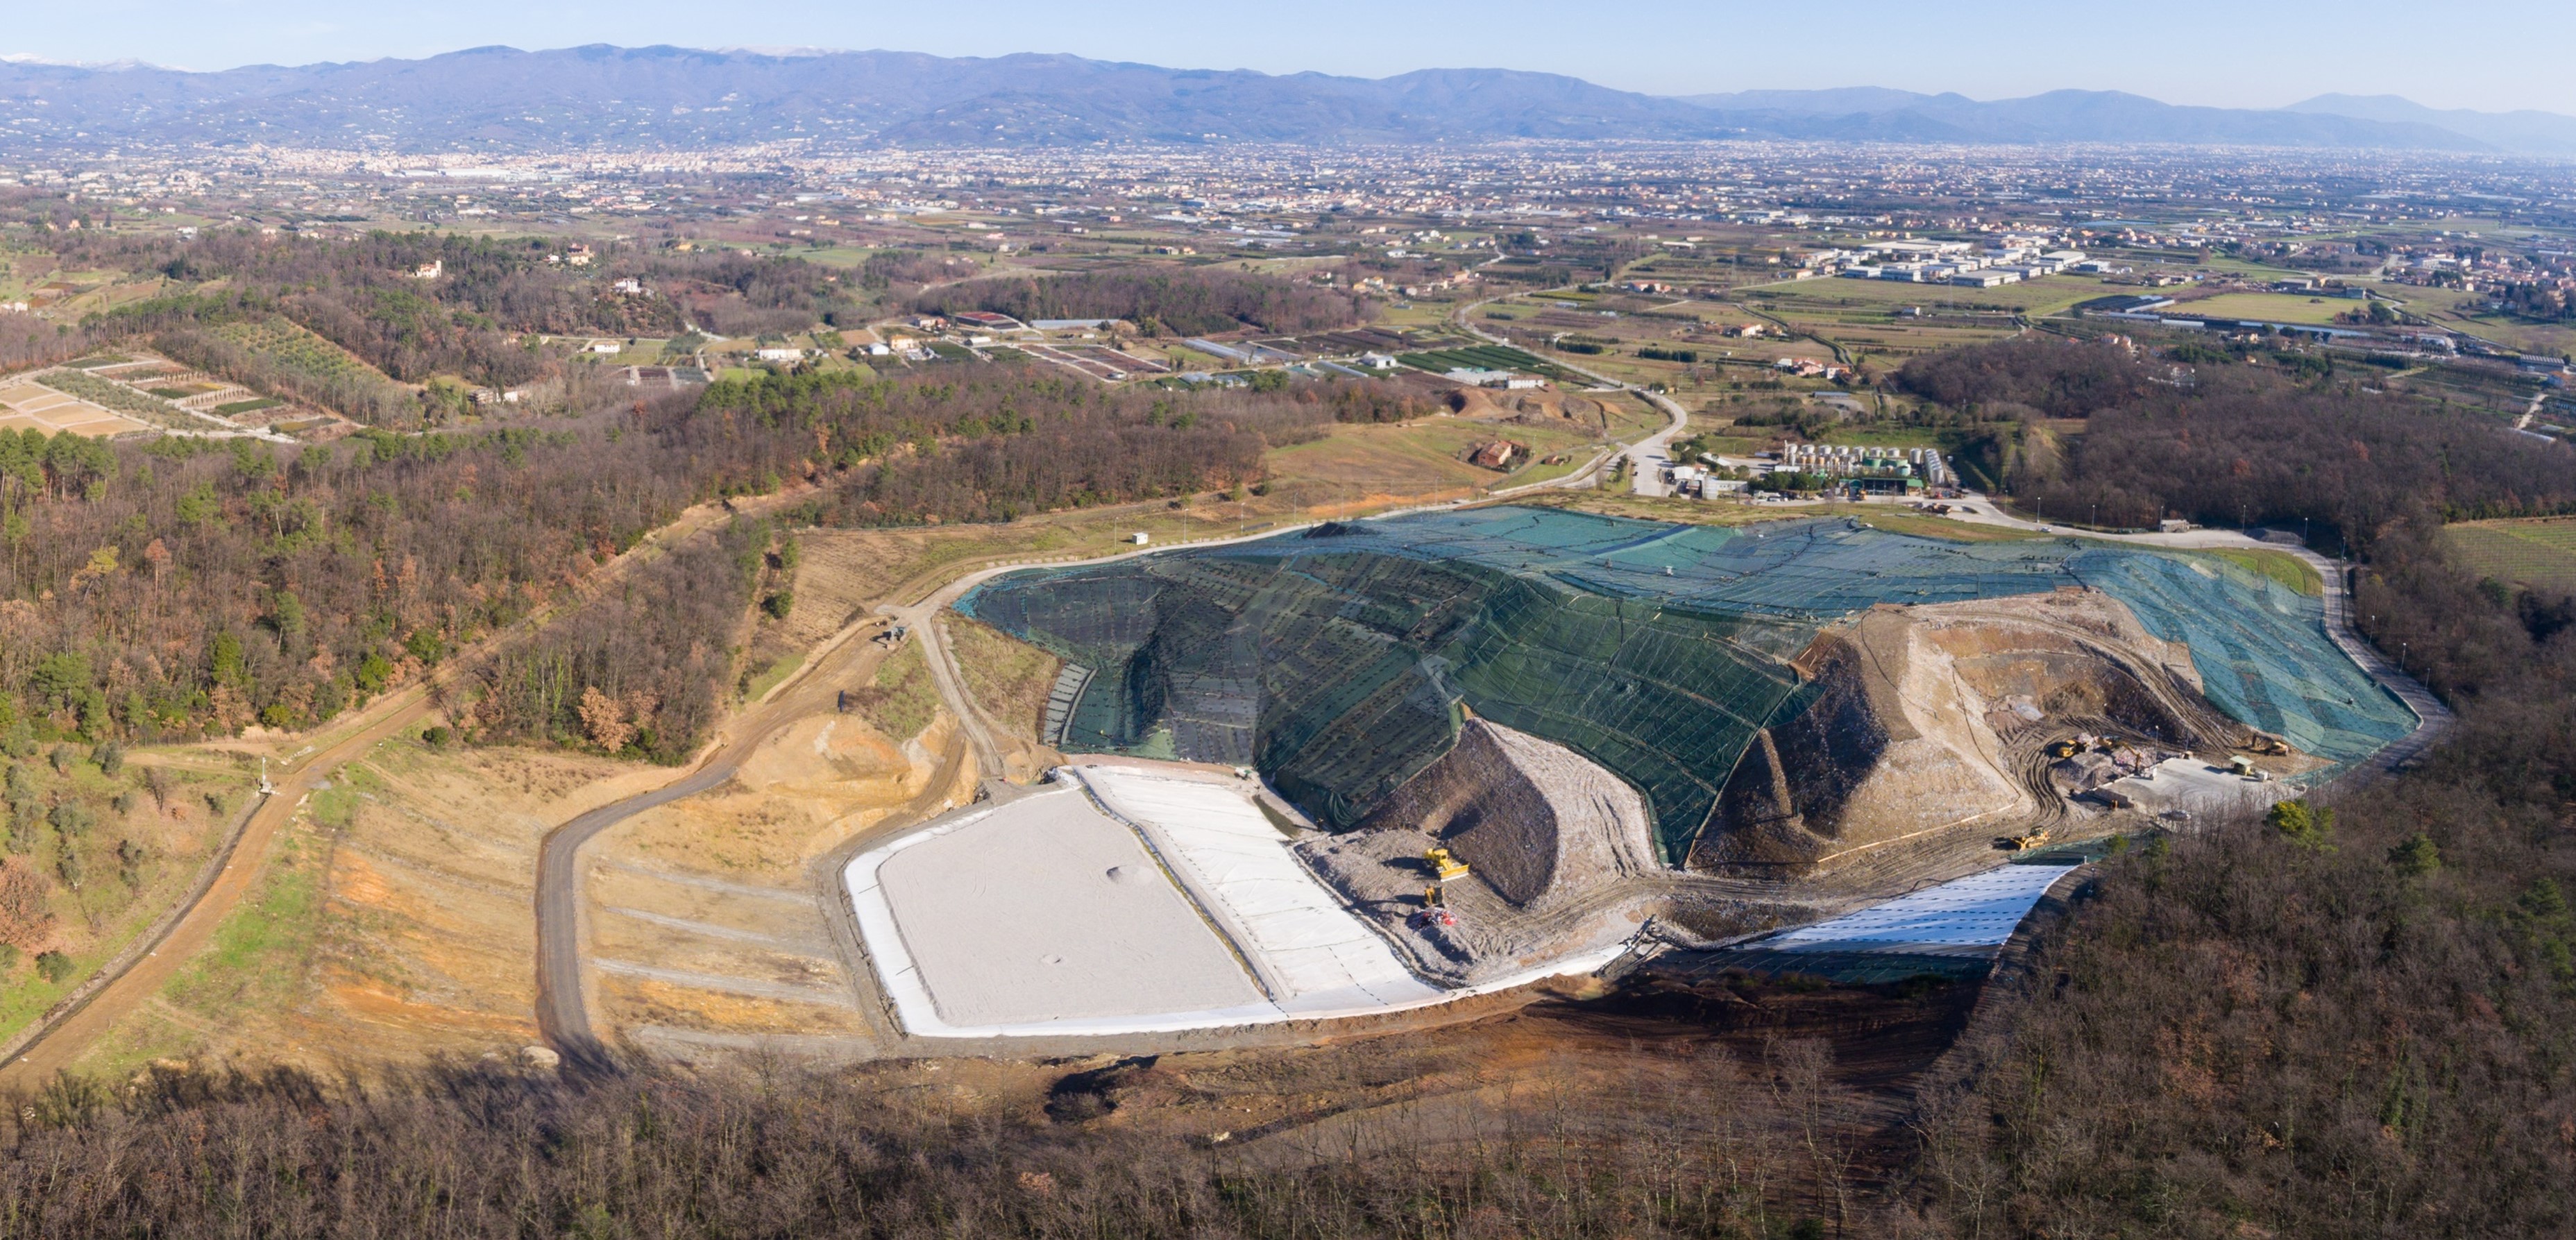 Overview of Landfill in Serravalle Pistoiese (Pistoia)